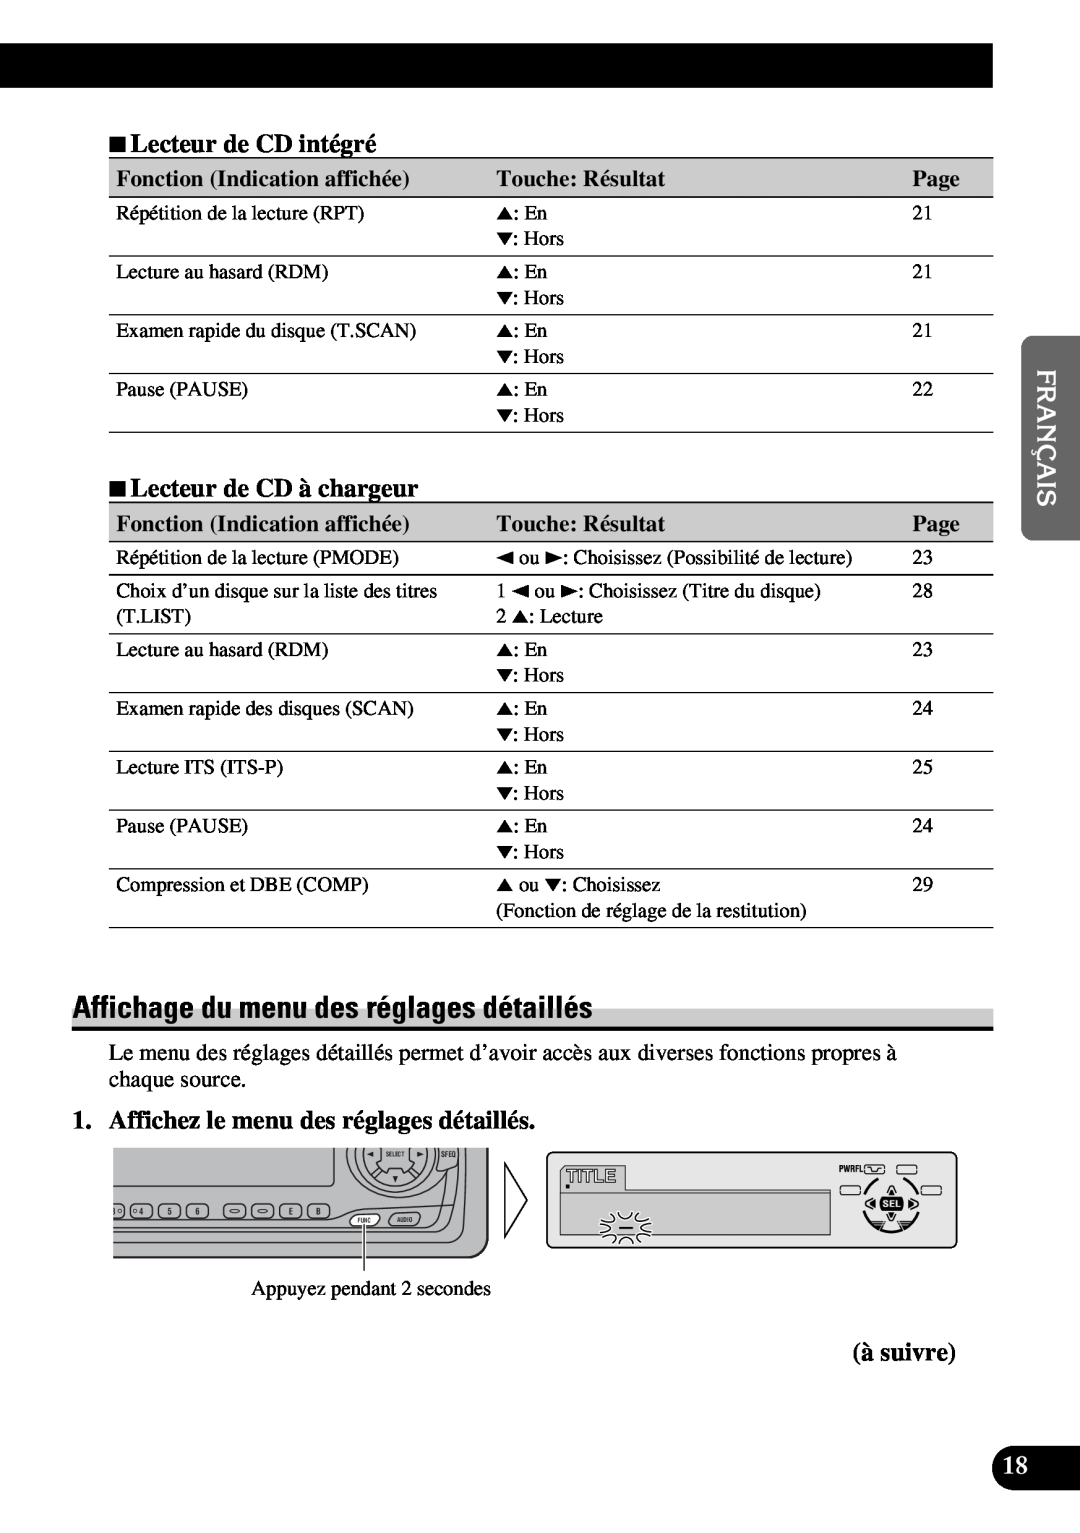 Pioneer DEH-P6300 Affichage du menu des réglages détaillés, 7Lecteur de CD intégré, 7Lecteur de CD à chargeur, à suivre 